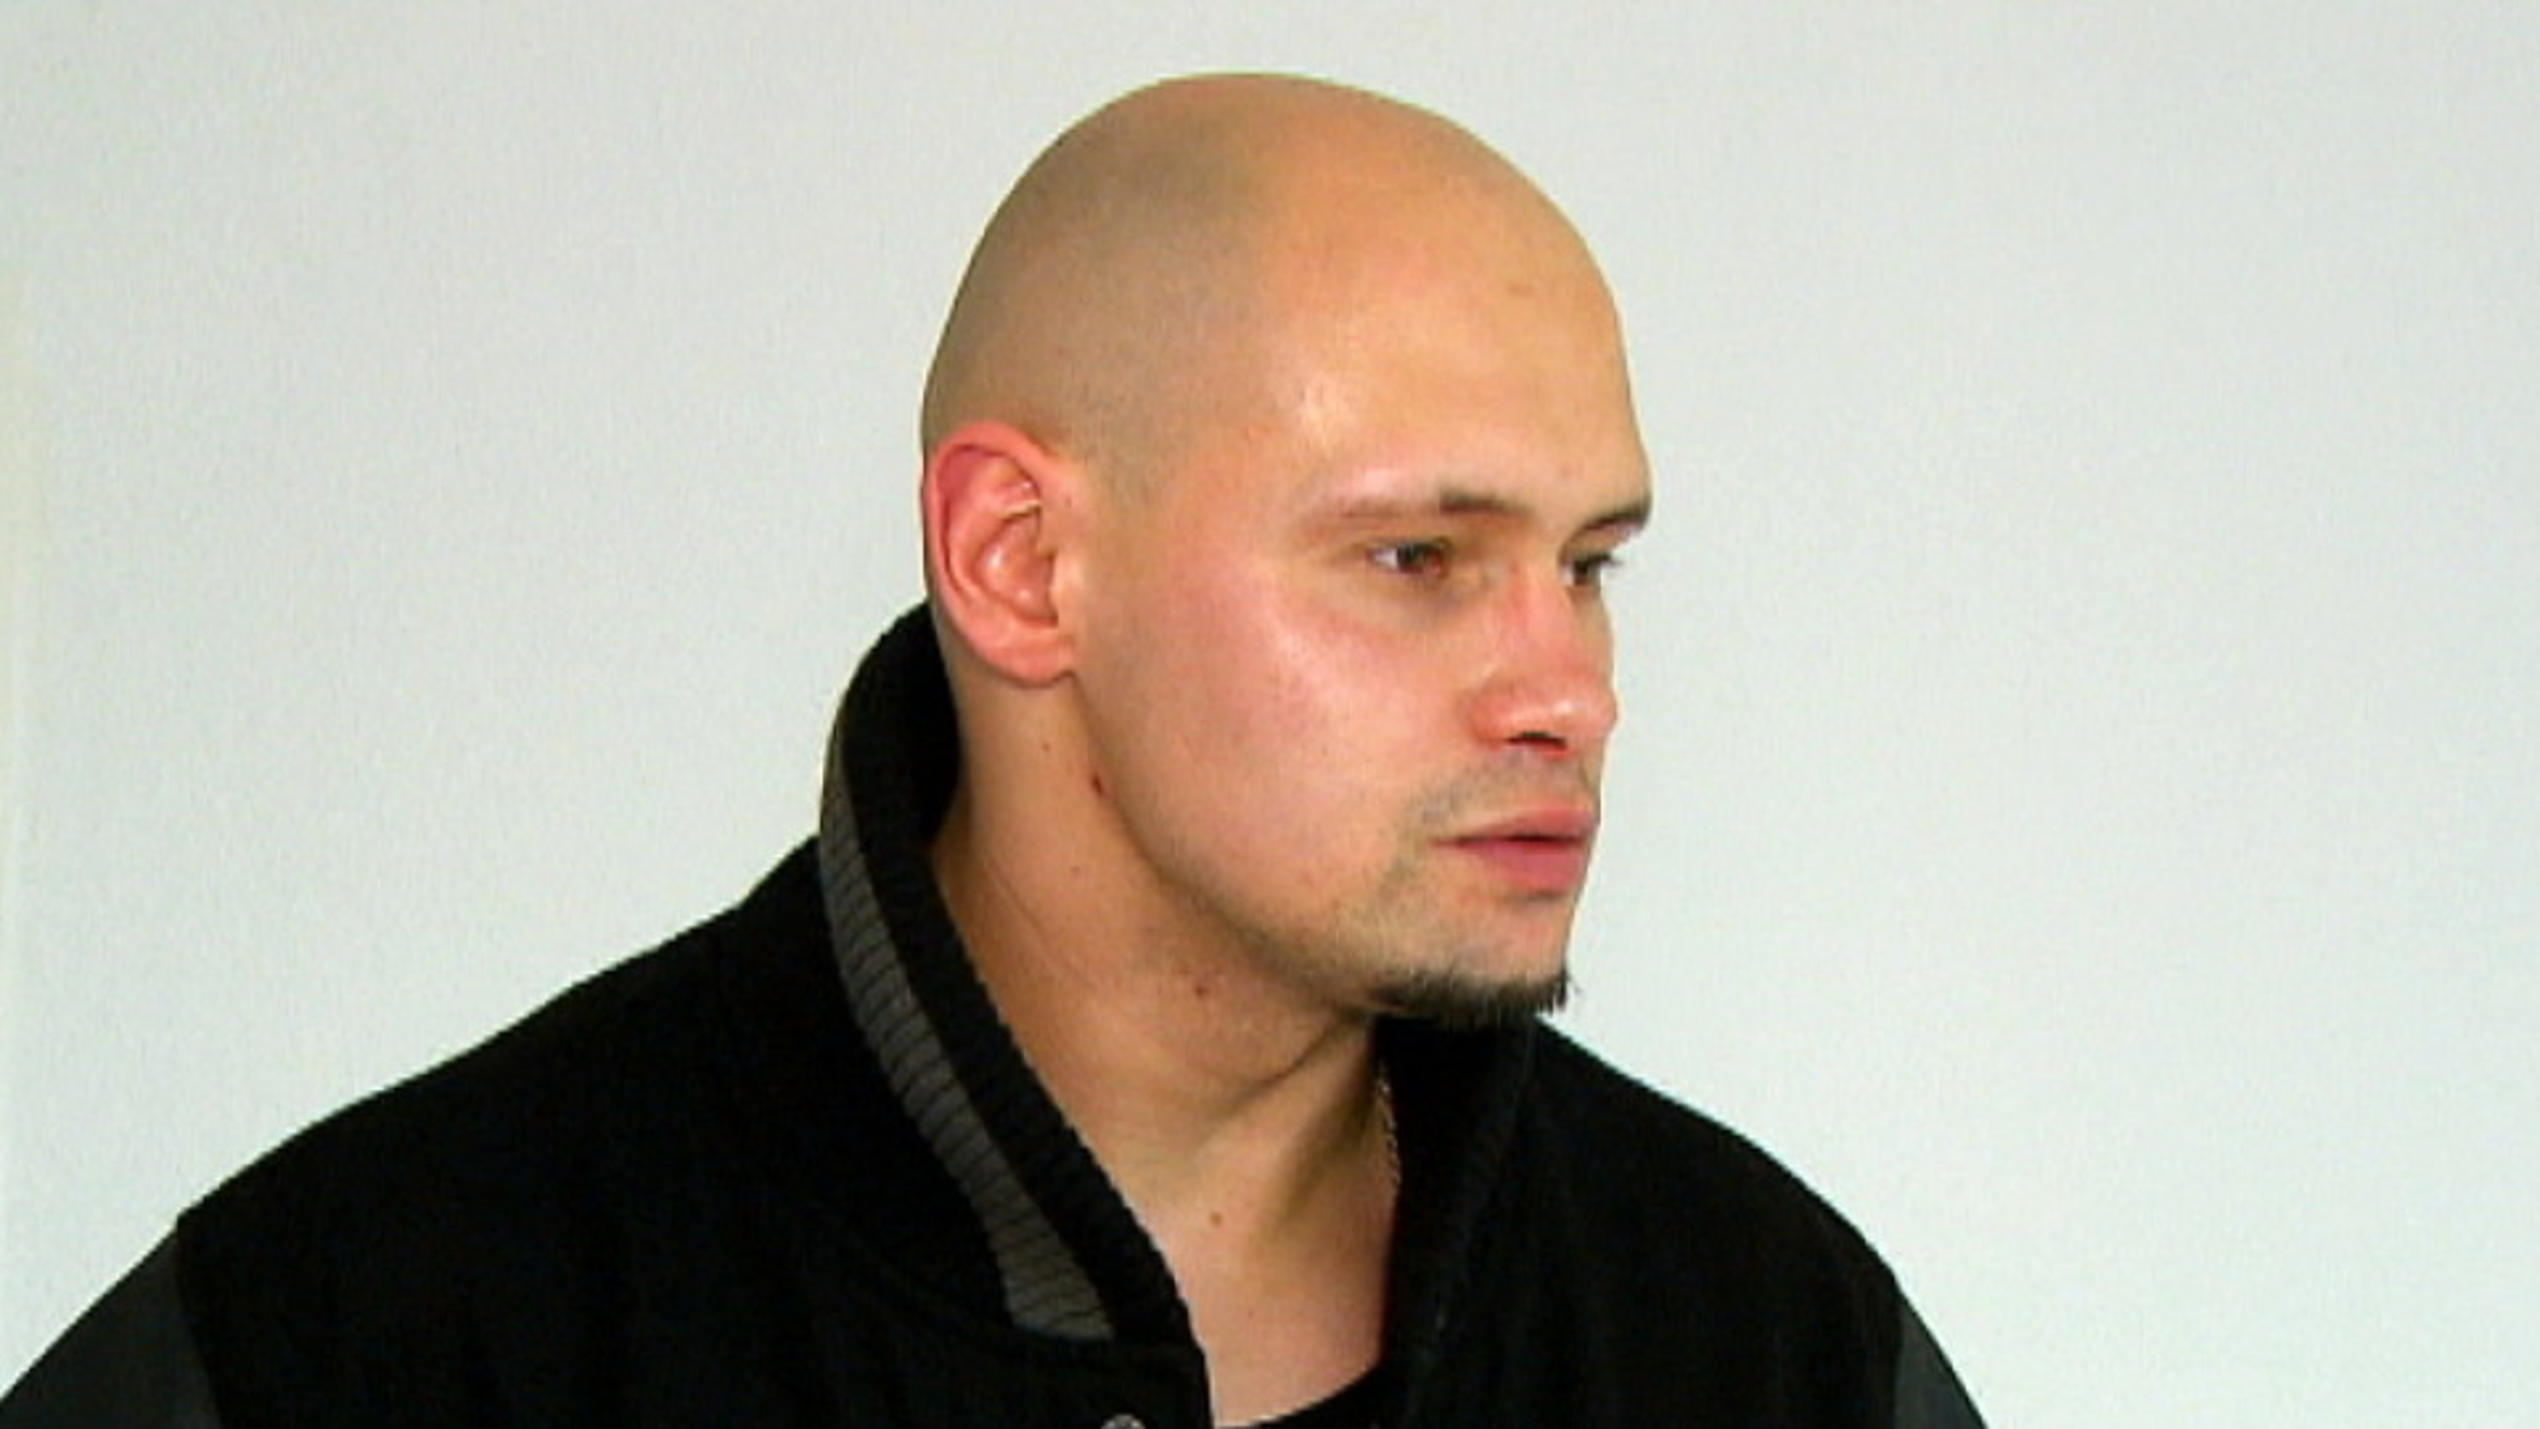 mieten, kaufen, wohnen: Marcin hat mit Vorurteilen zu kämpfen